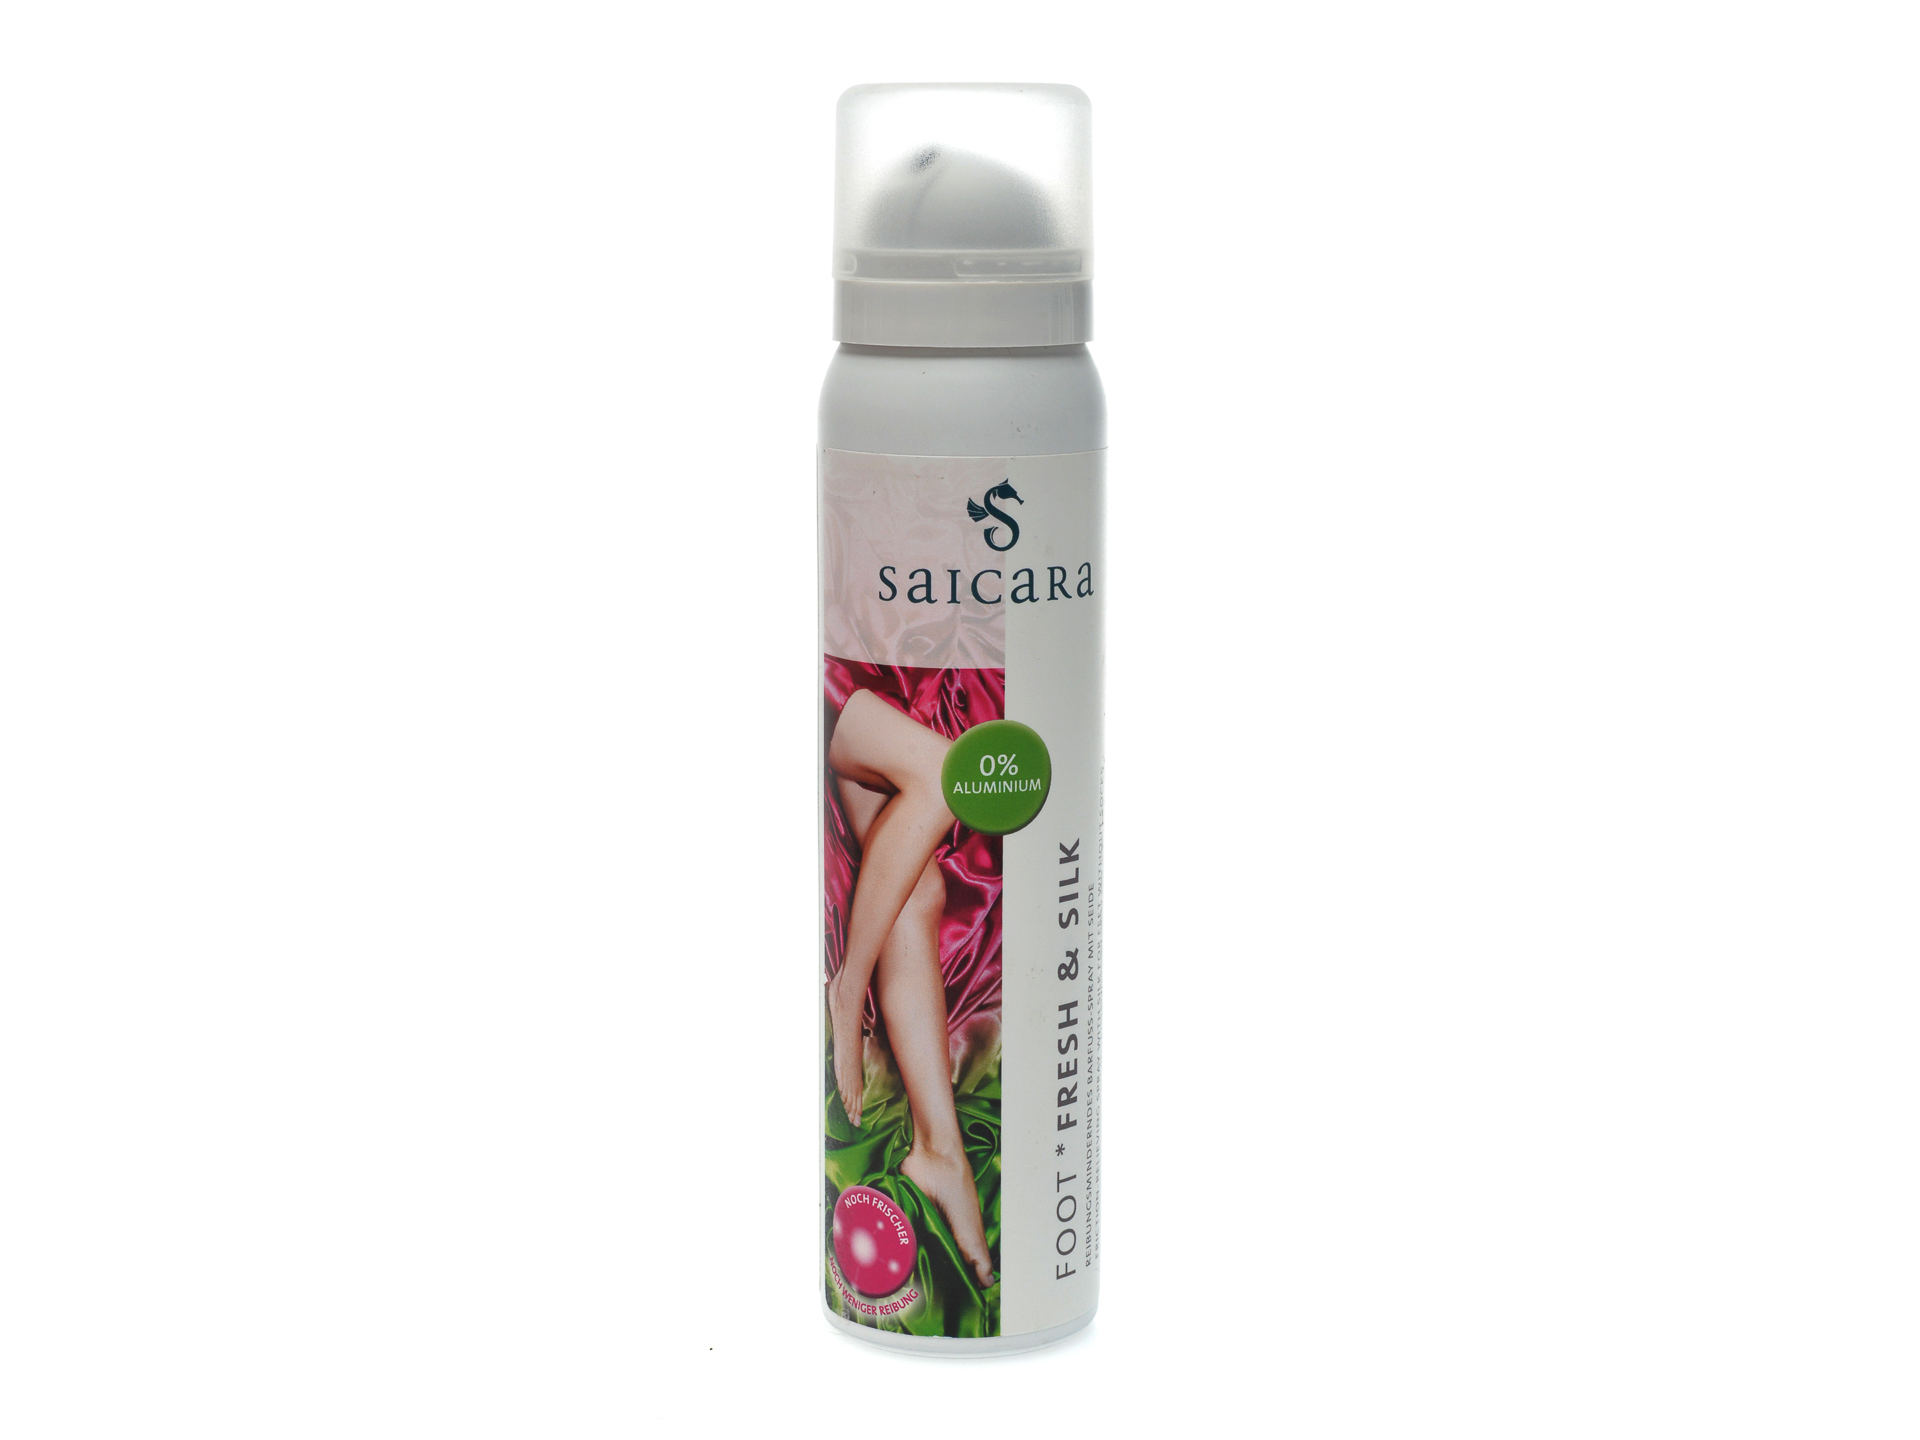 PR Spray-deodorant pentru picioare, Solitaire